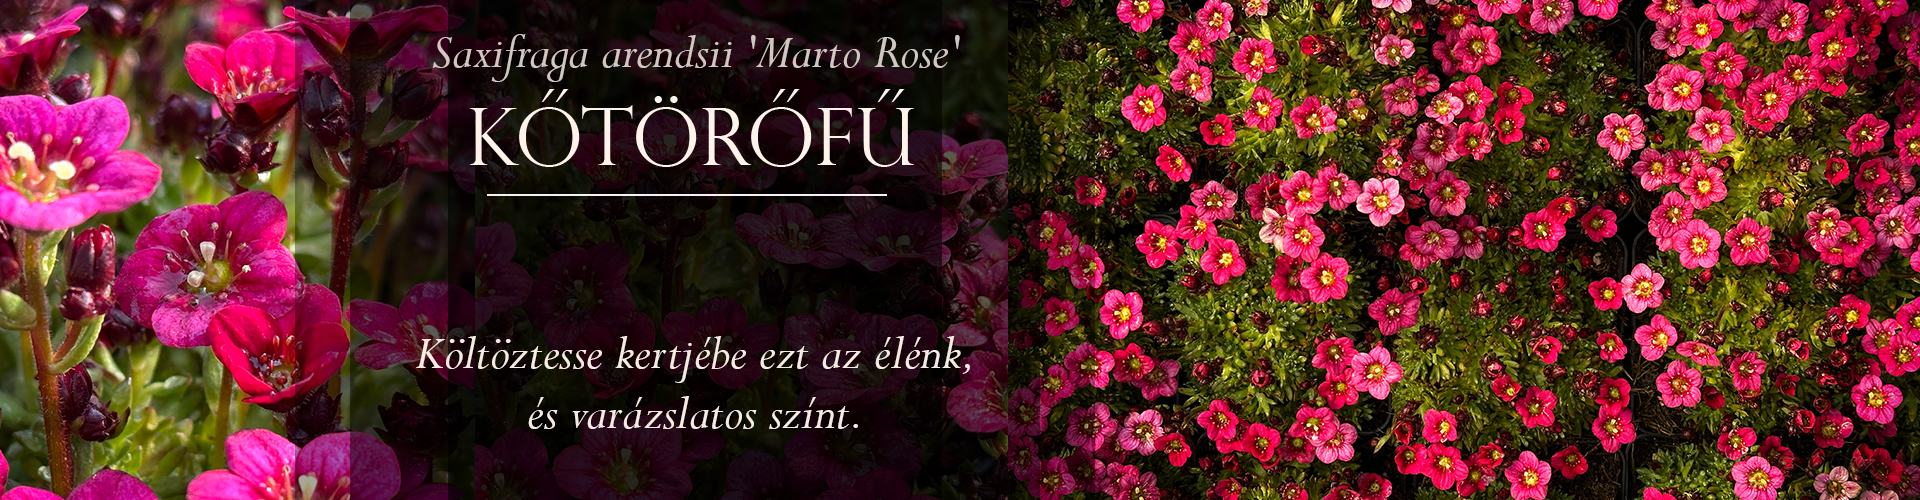 Saxifraga arendsii 'Marto Rose' – Kőtörőfű